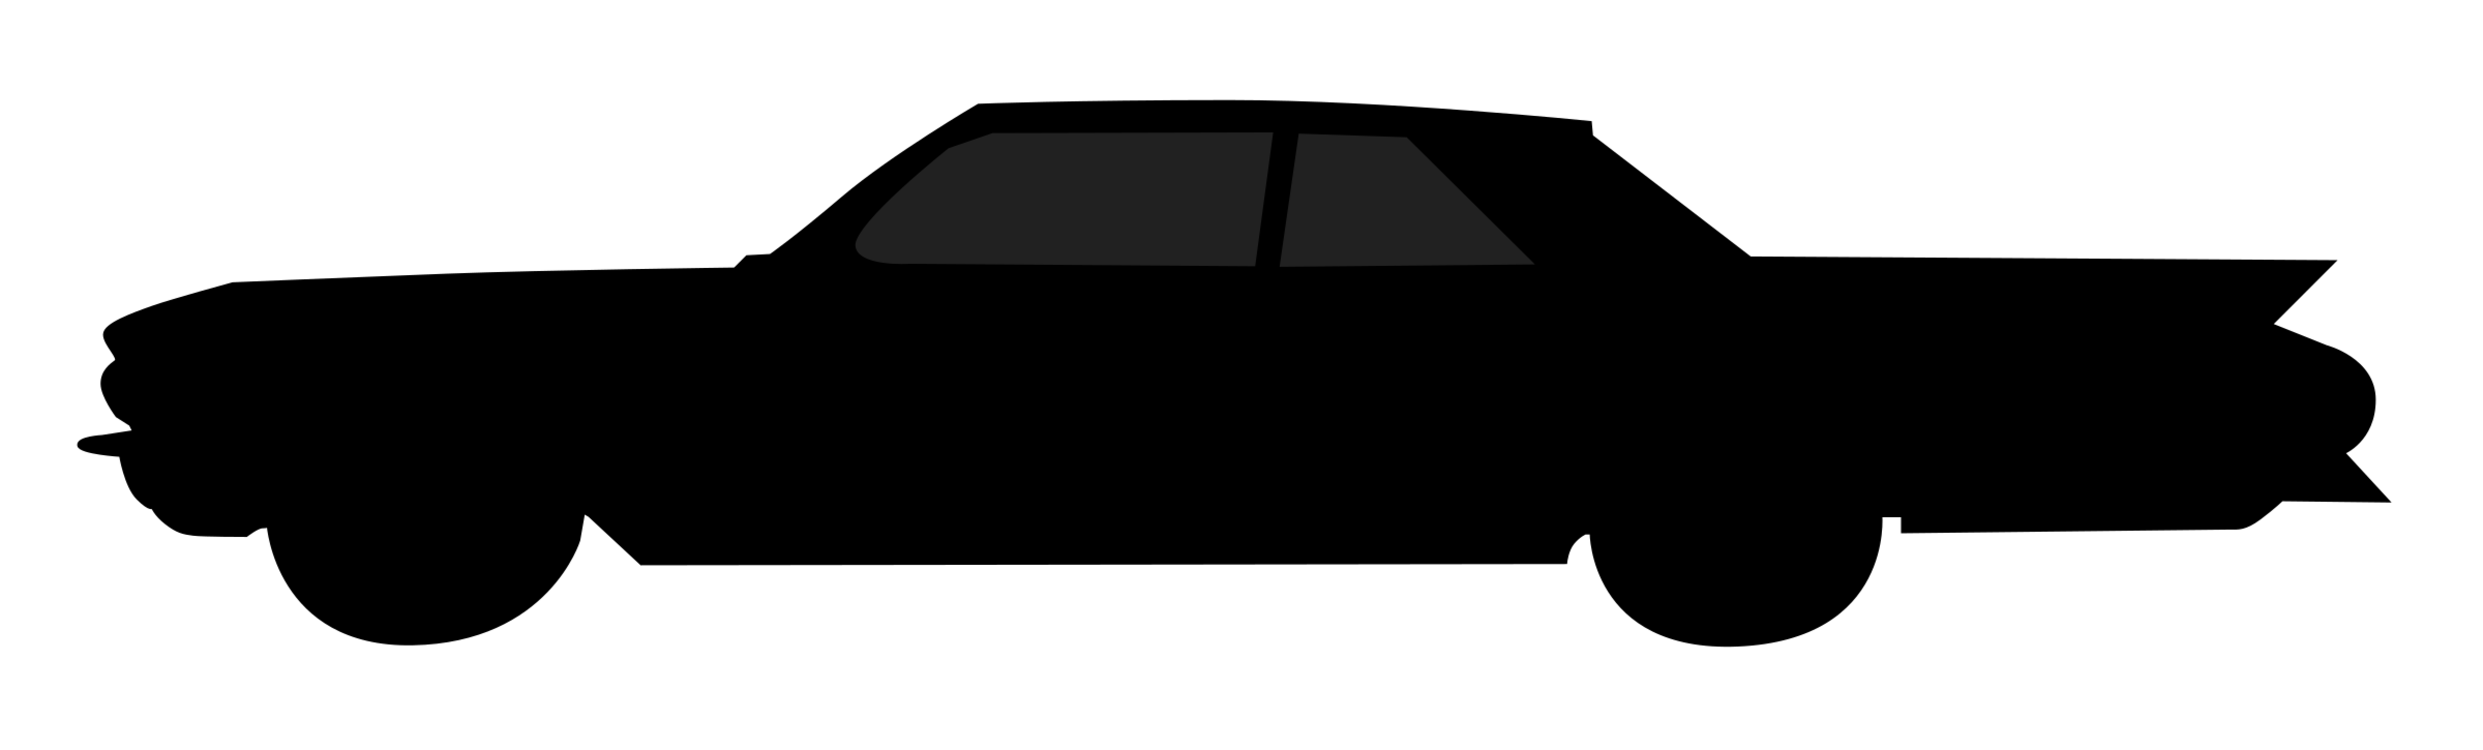 Silhouette,Car,Symbol